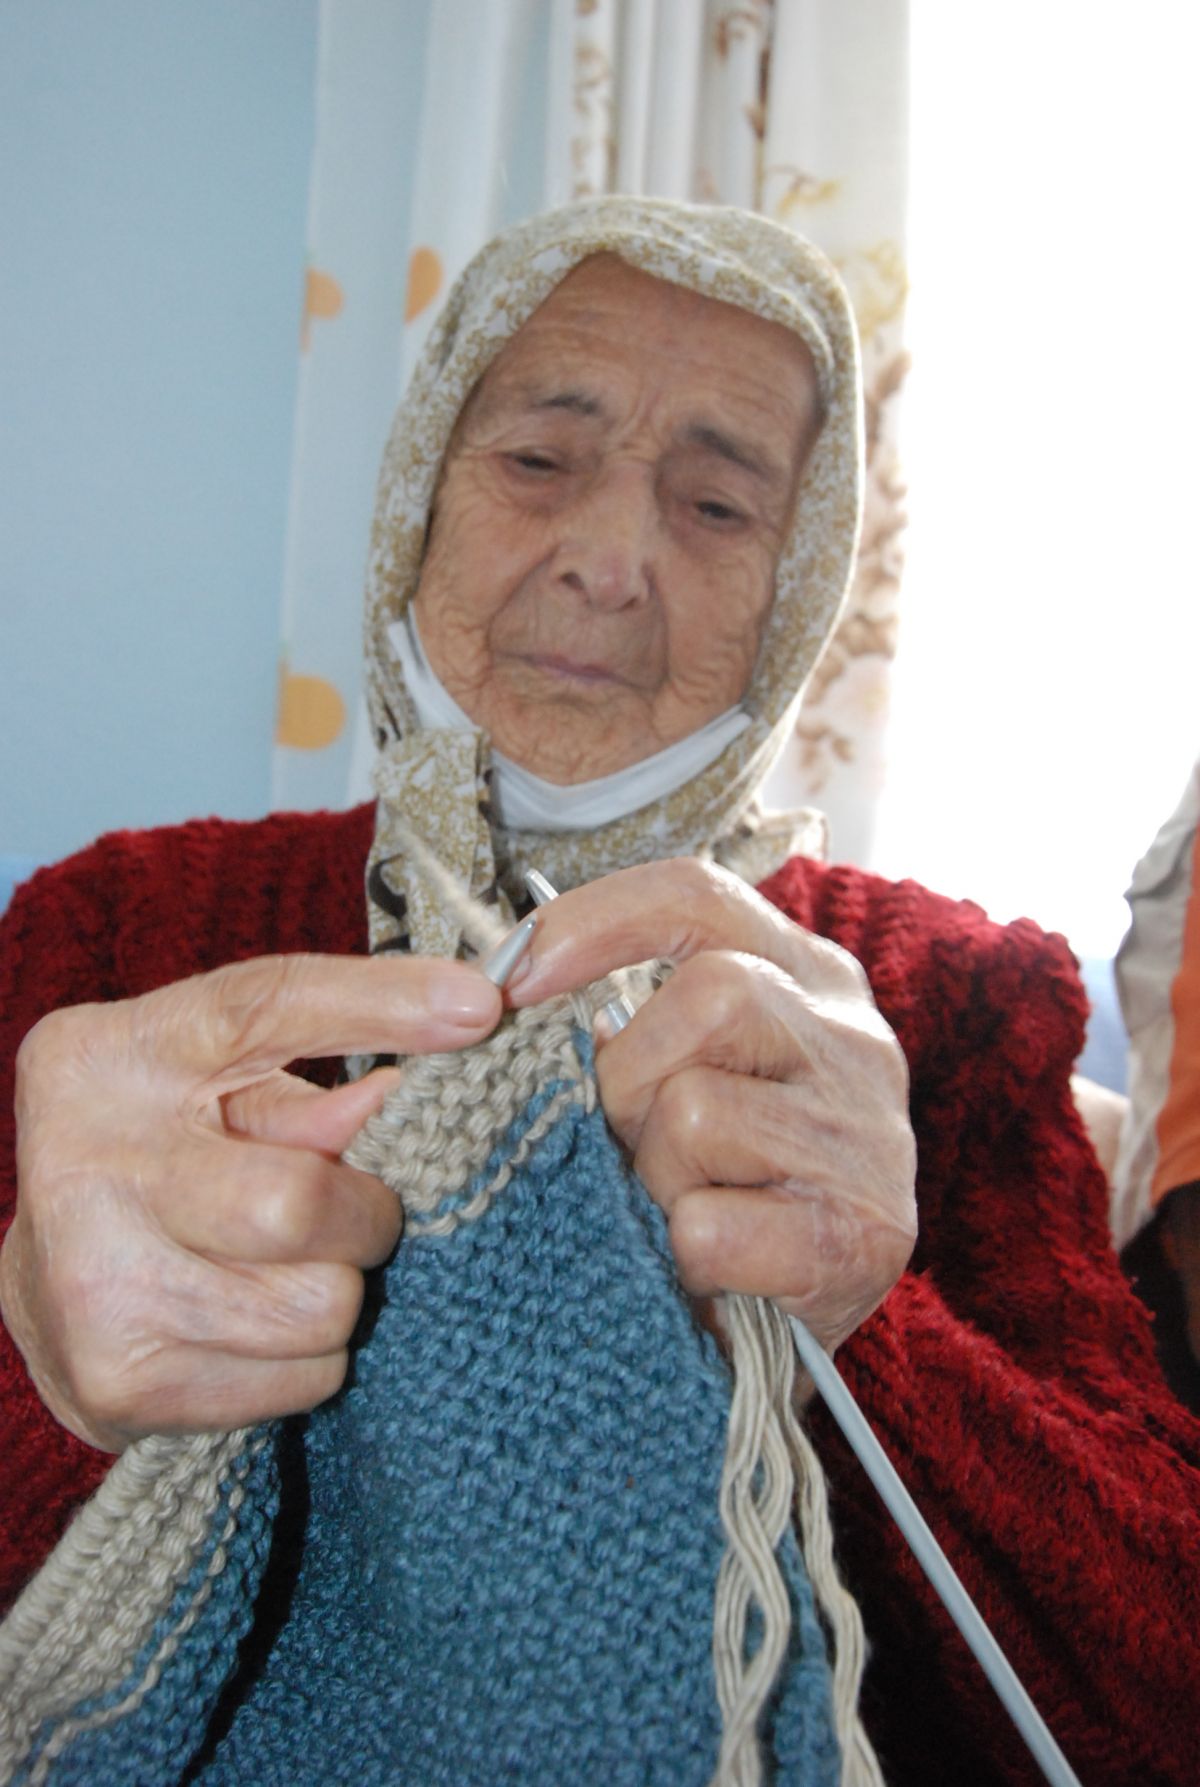 Bartın beat the coronavirus at the age of 96 #5